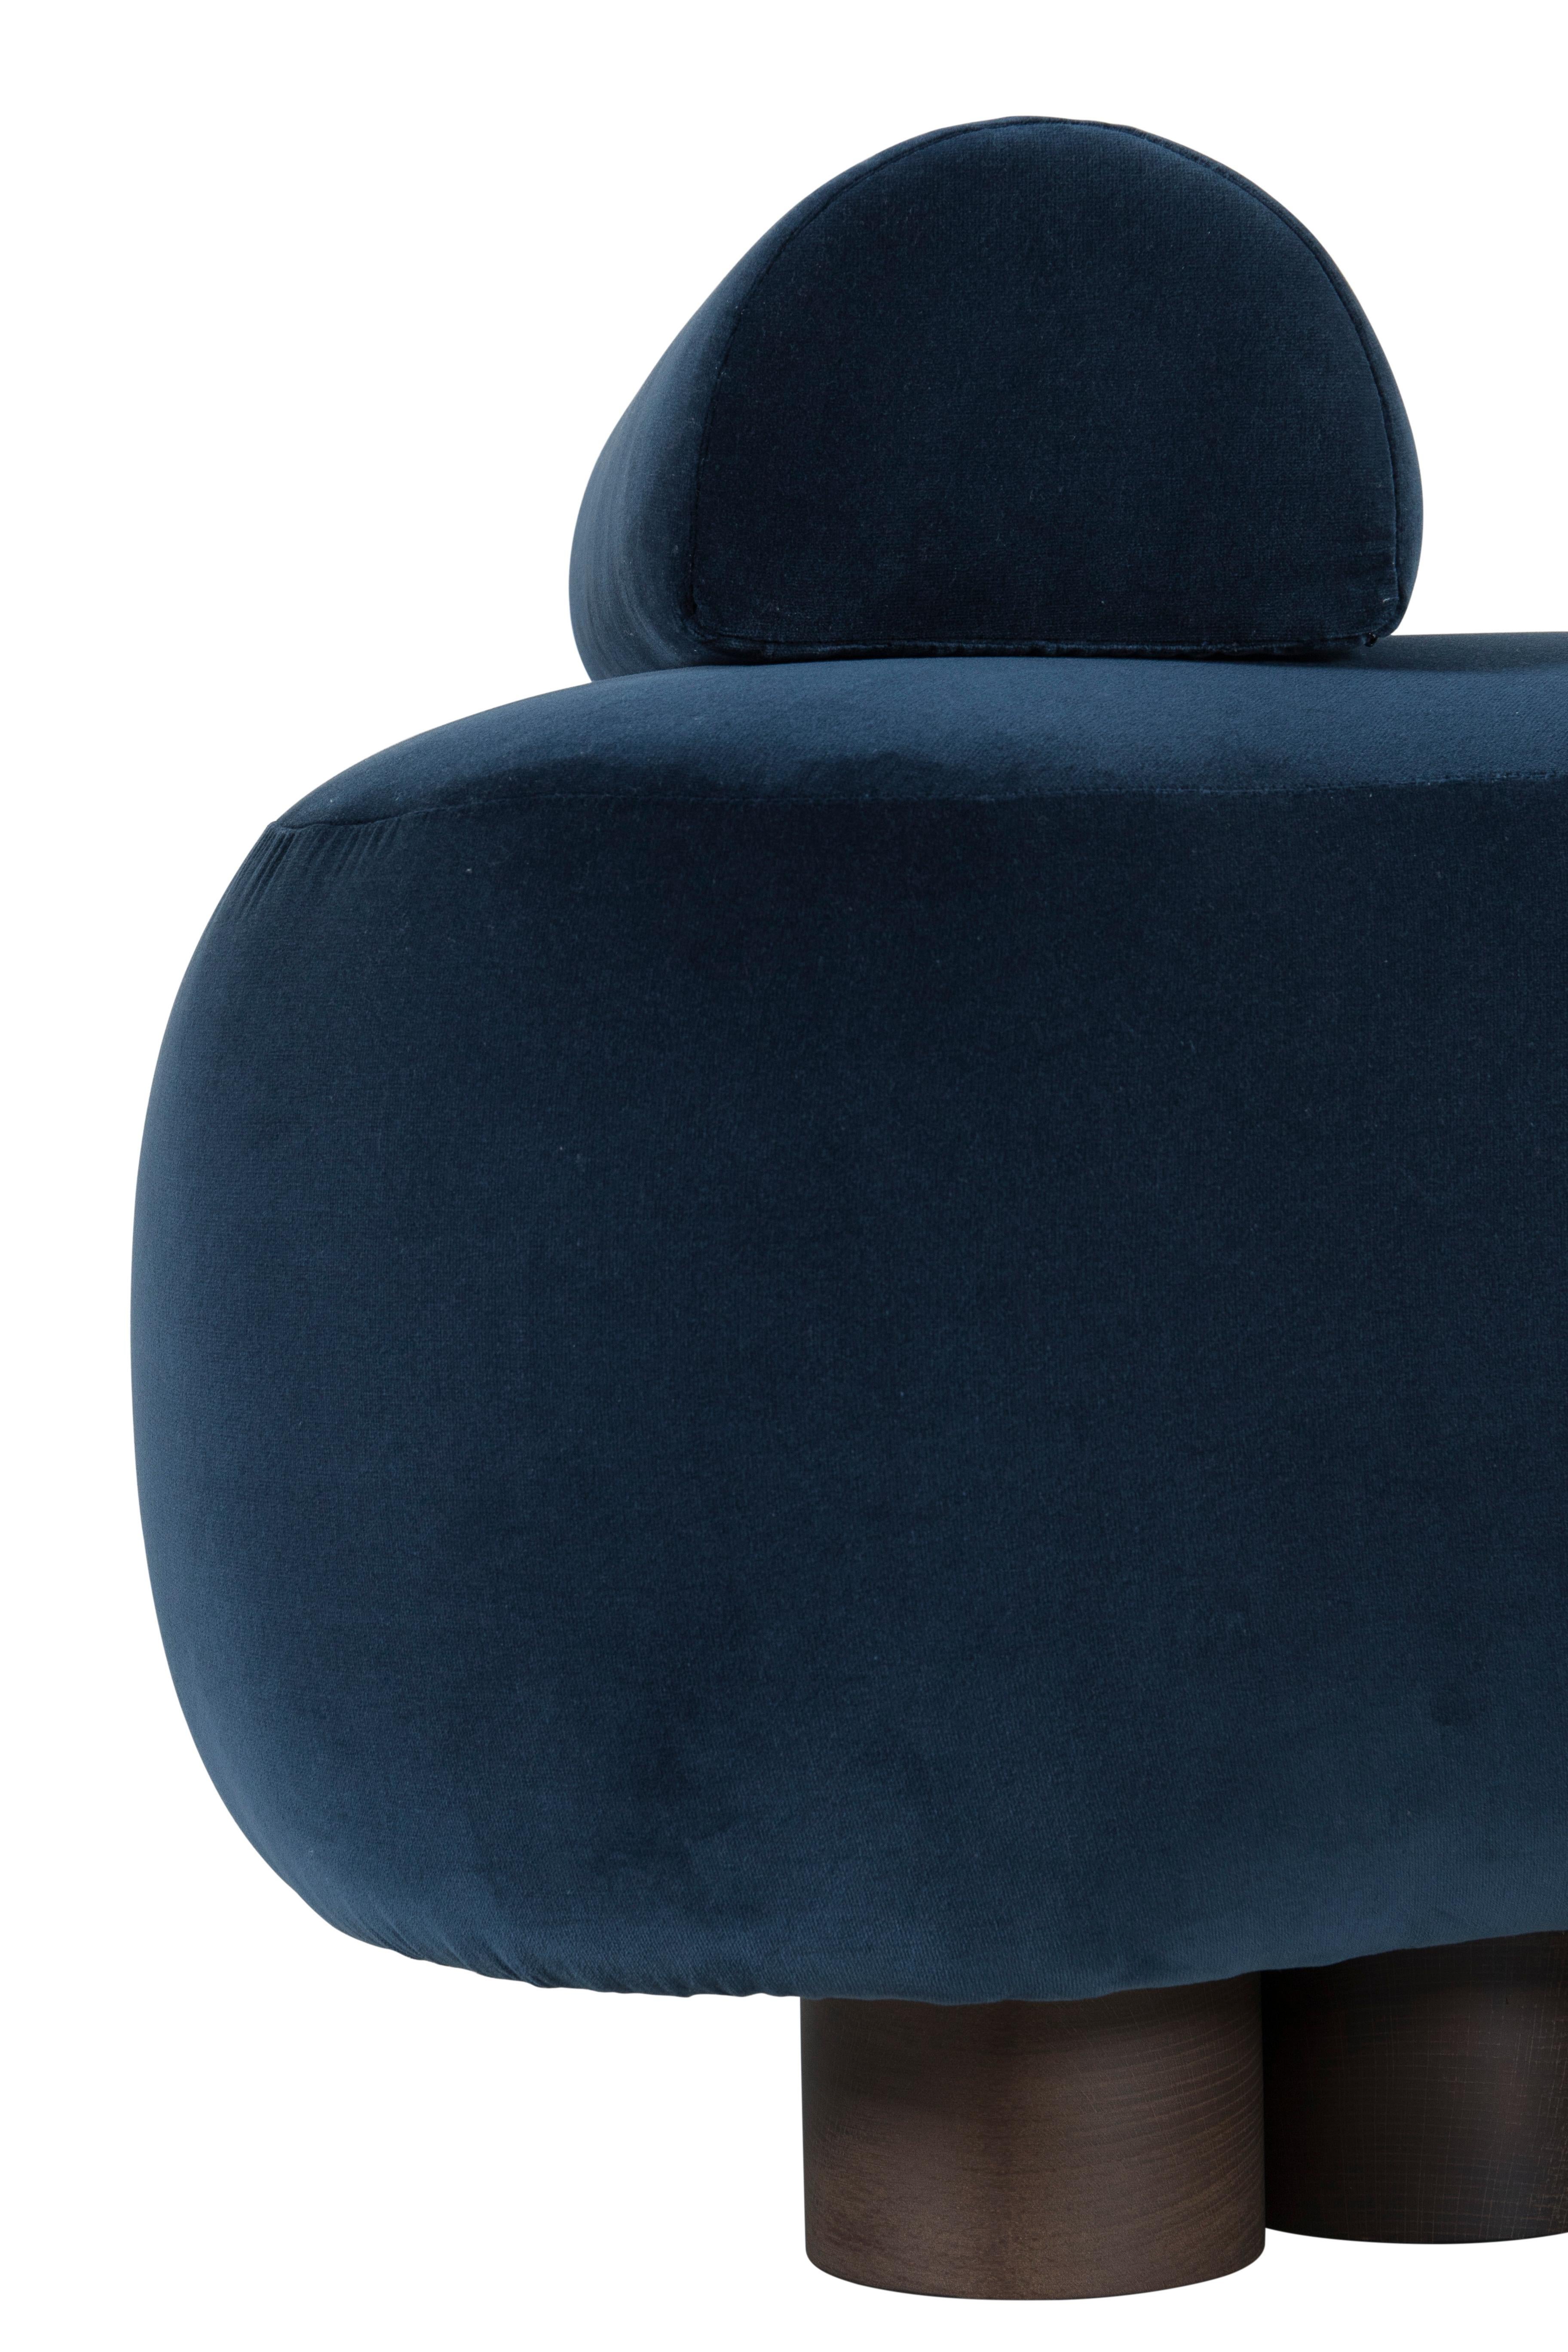 Modern Minho Day Bed. DEDAR Dark Blue Velvet, Handmade in Portugal by Greenapple For Sale 3